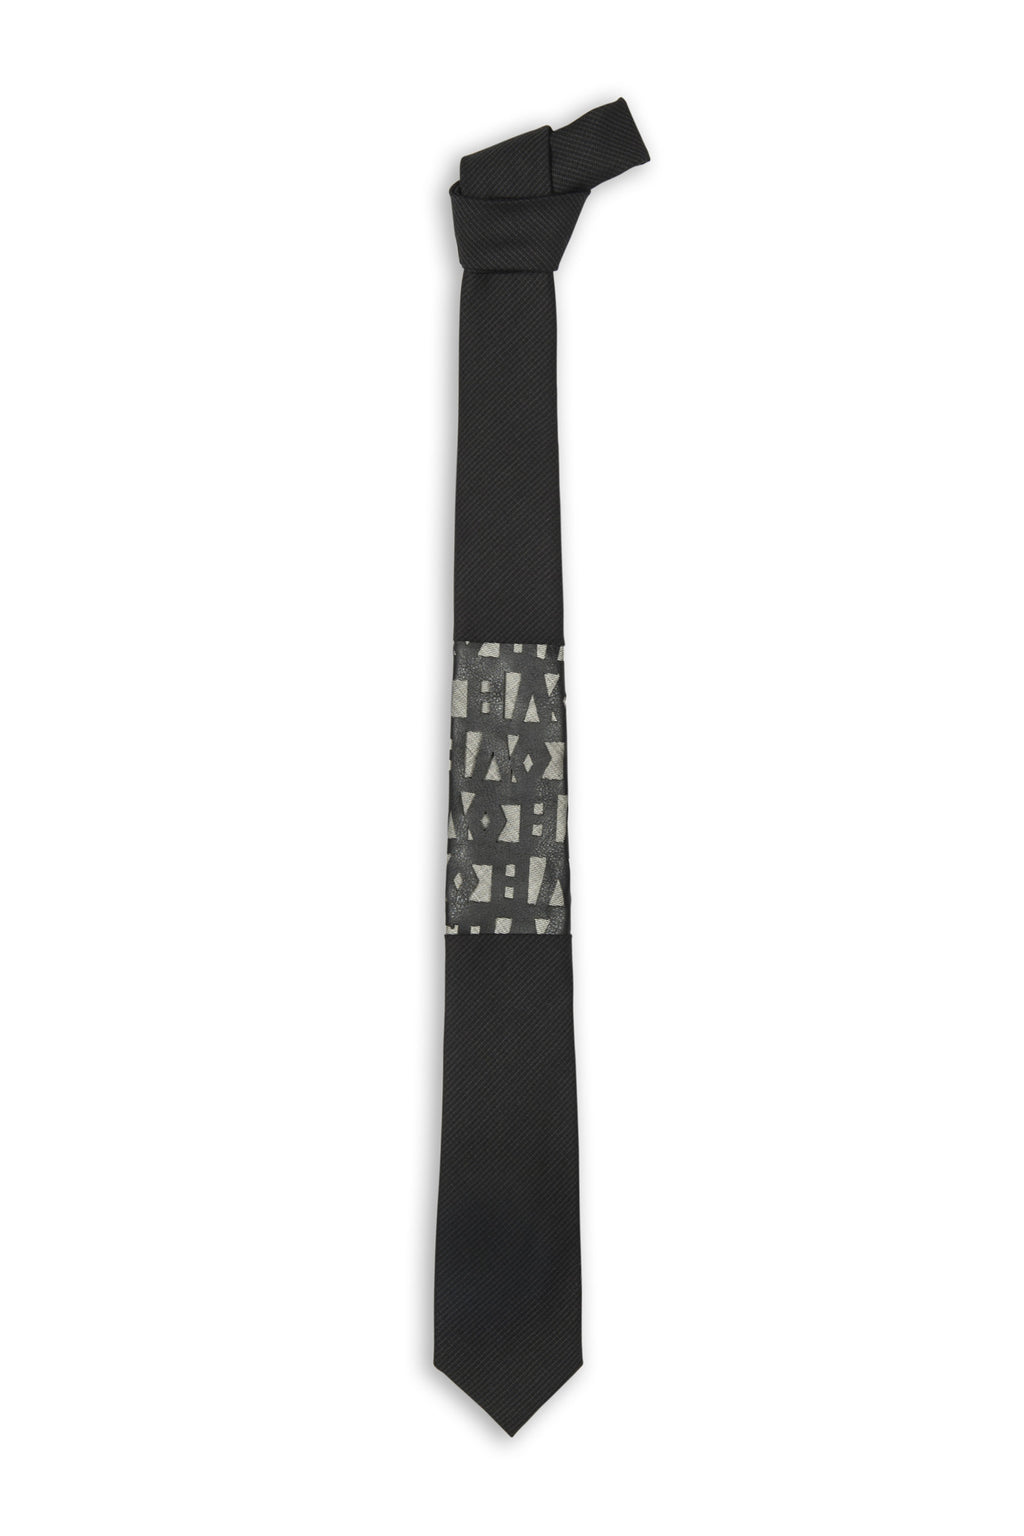 Cravate laine noire avec insertion lettrage - Black wool tie with letter insertion 